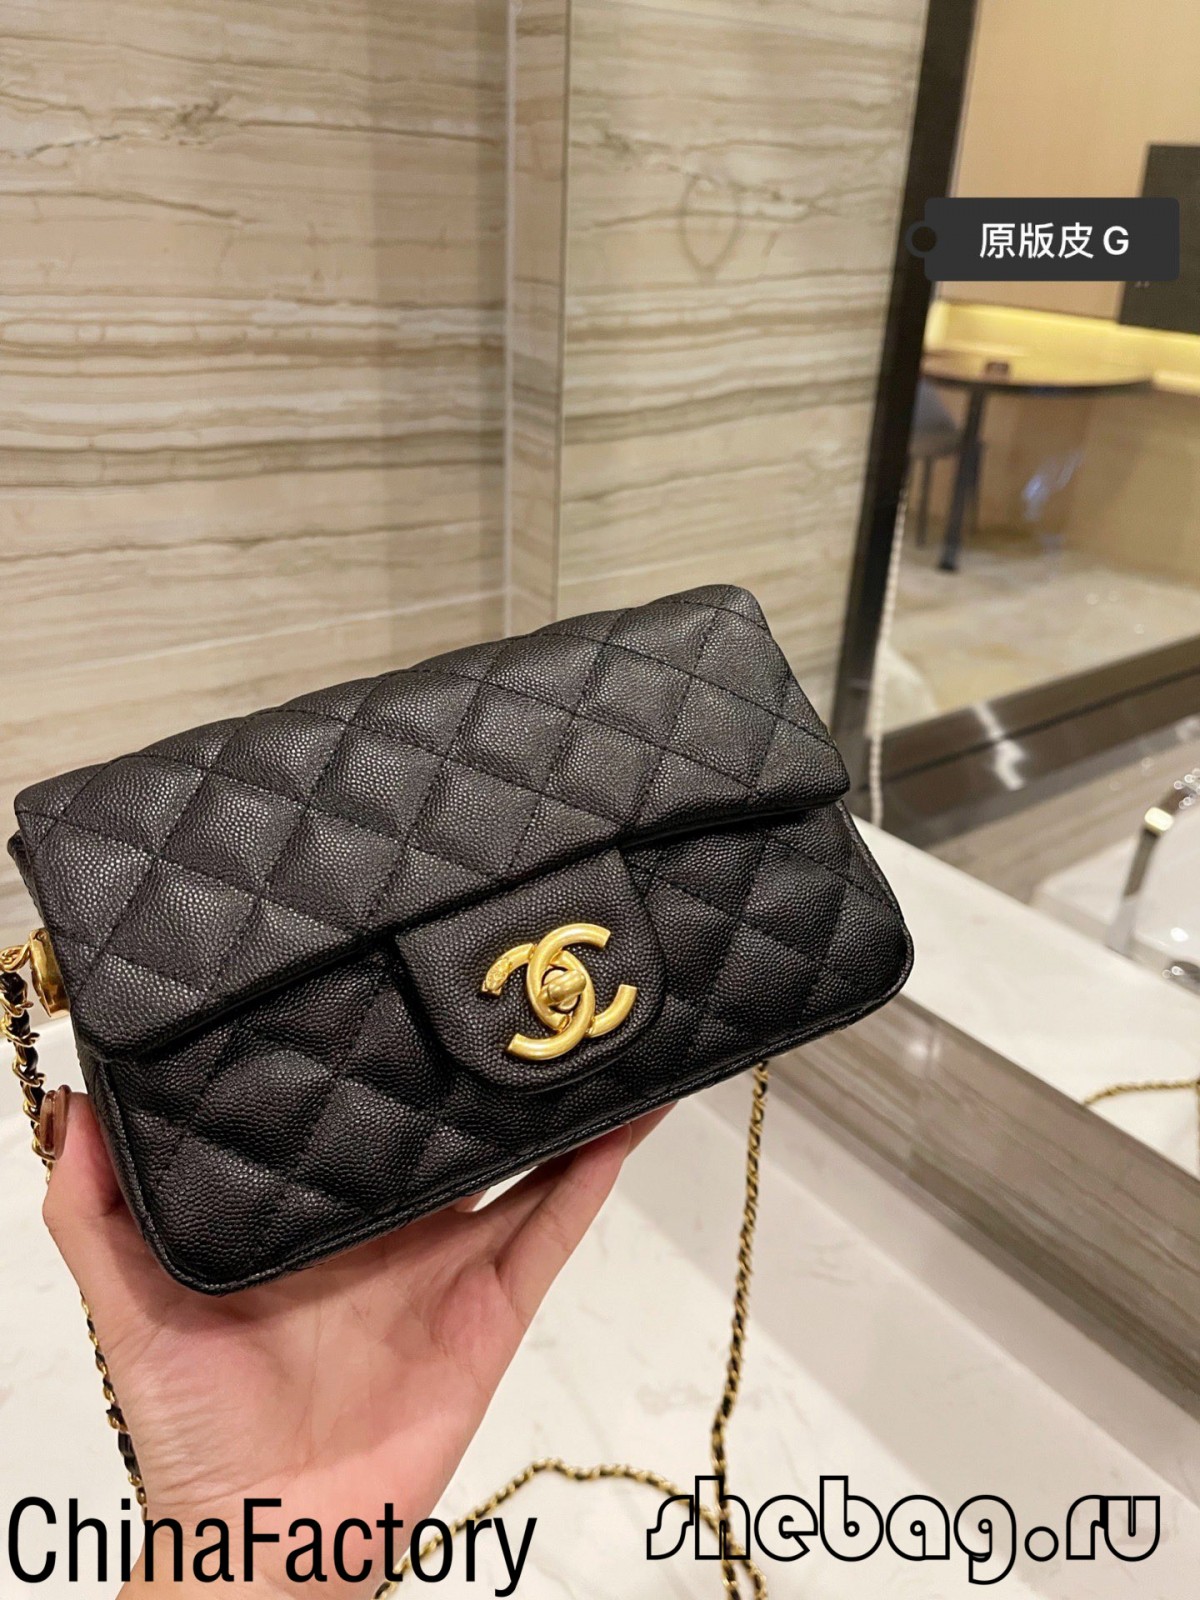 Chanel-ի դասական կափույր պայուսակի խավիարի կրկնօրինակ. պետք է պայուսակ (2022թ. ամենաթեժ)-Լավագույն որակի կեղծ Louis Vuitton պայուսակի առցանց խանութ, Replica դիզայներական պայուսակ ru